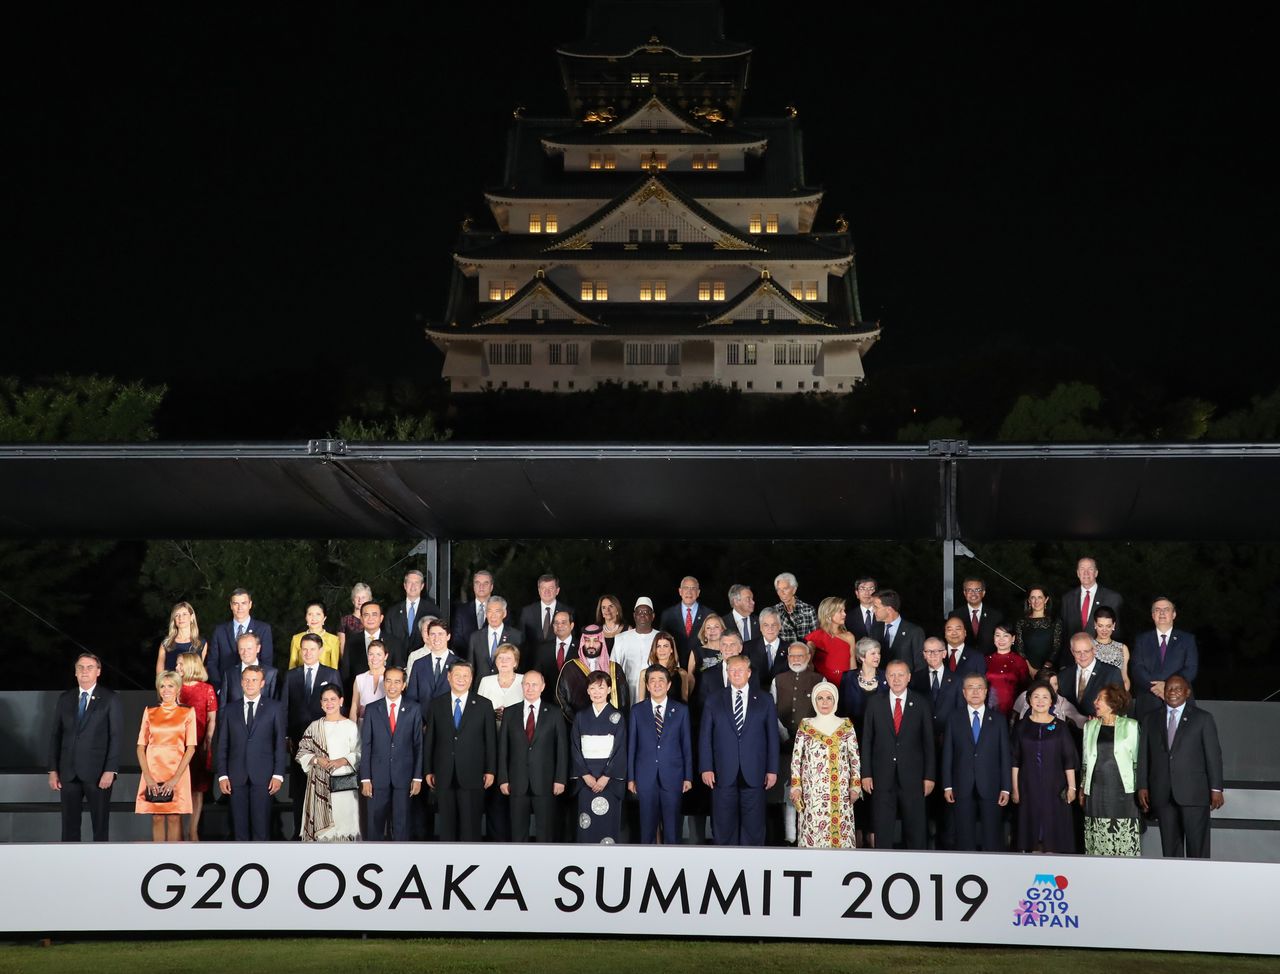 Участники саммита G20 с супругами собрались, чтобы сделать групповое фото на фоне замка Осака, 28 июня 2019 г., город Осака, район Тюо (фотография предоставлена Jiji Press)